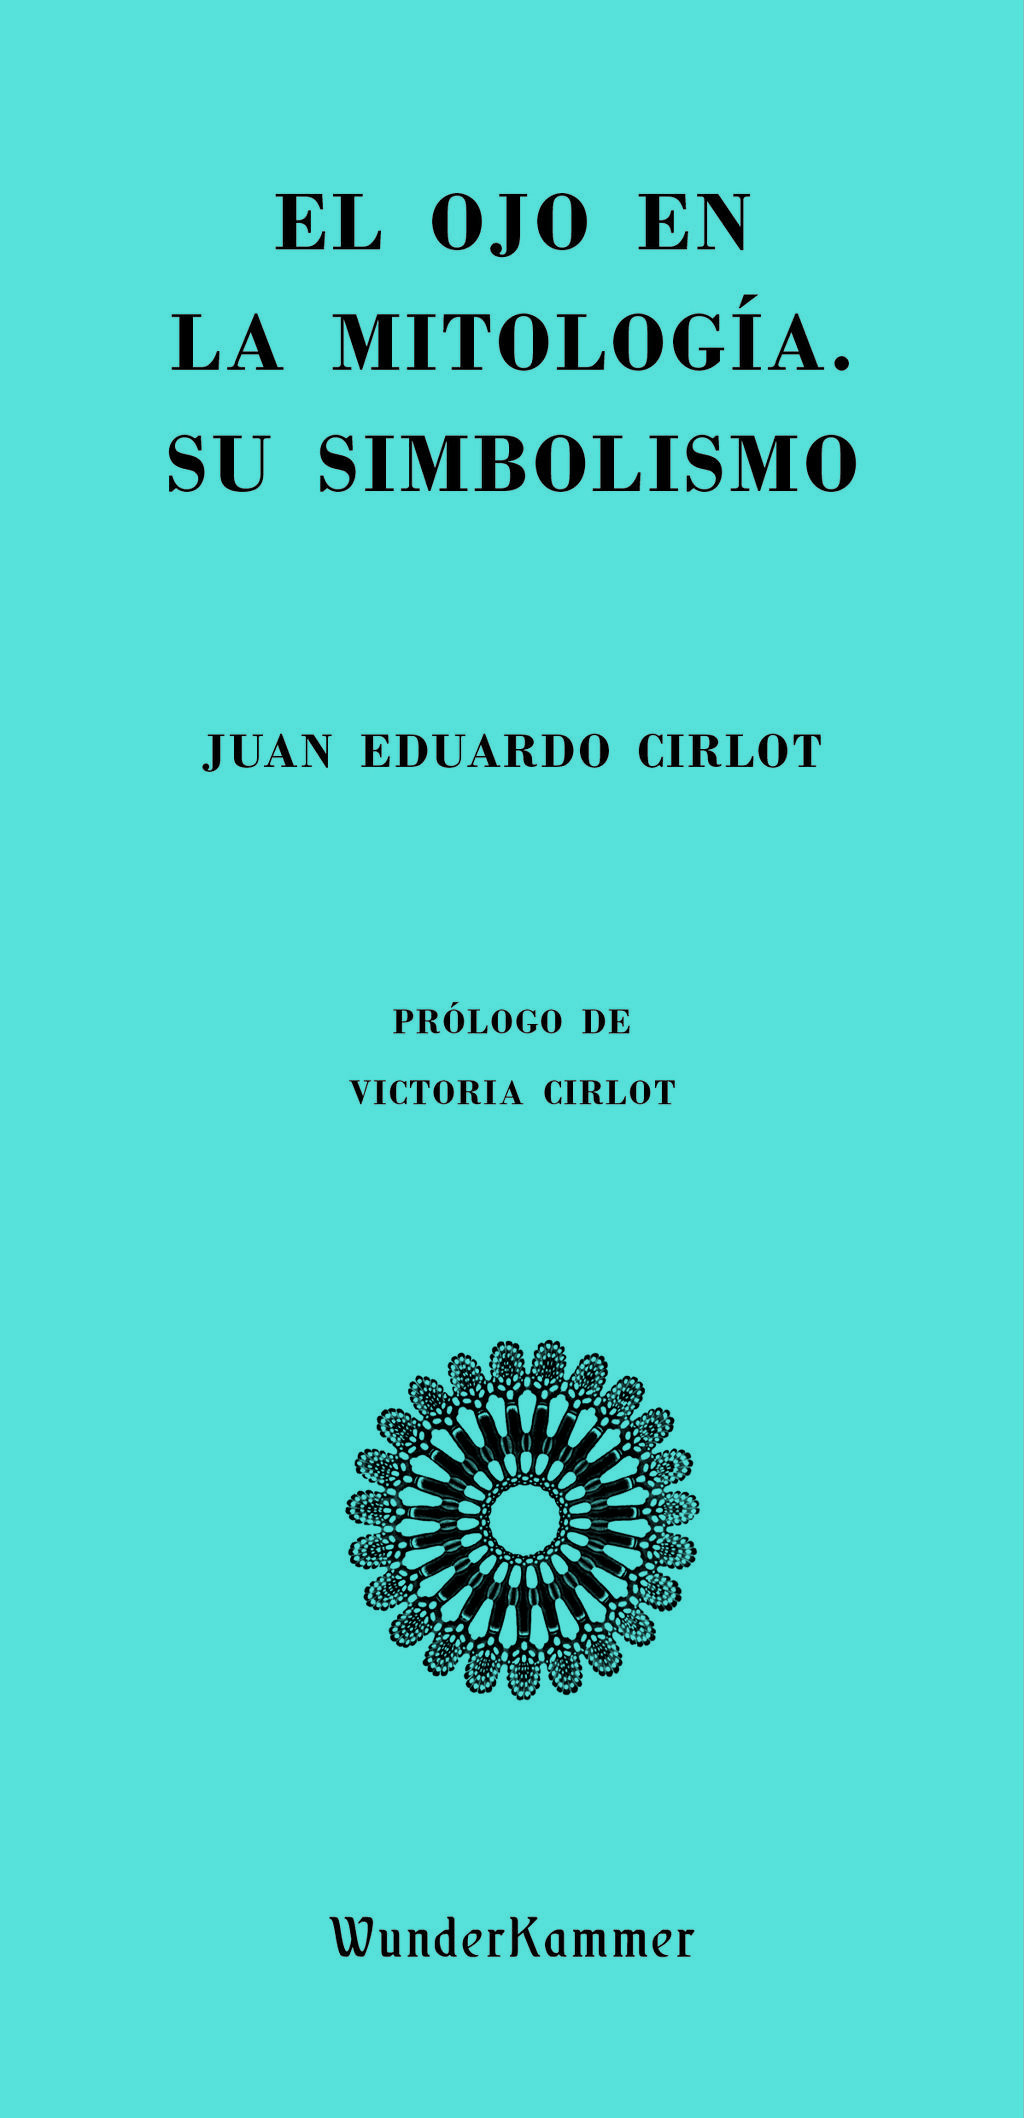 'El ojo en la mitología', Juan Eduardo Cirlot / WUNDERKAMMER.